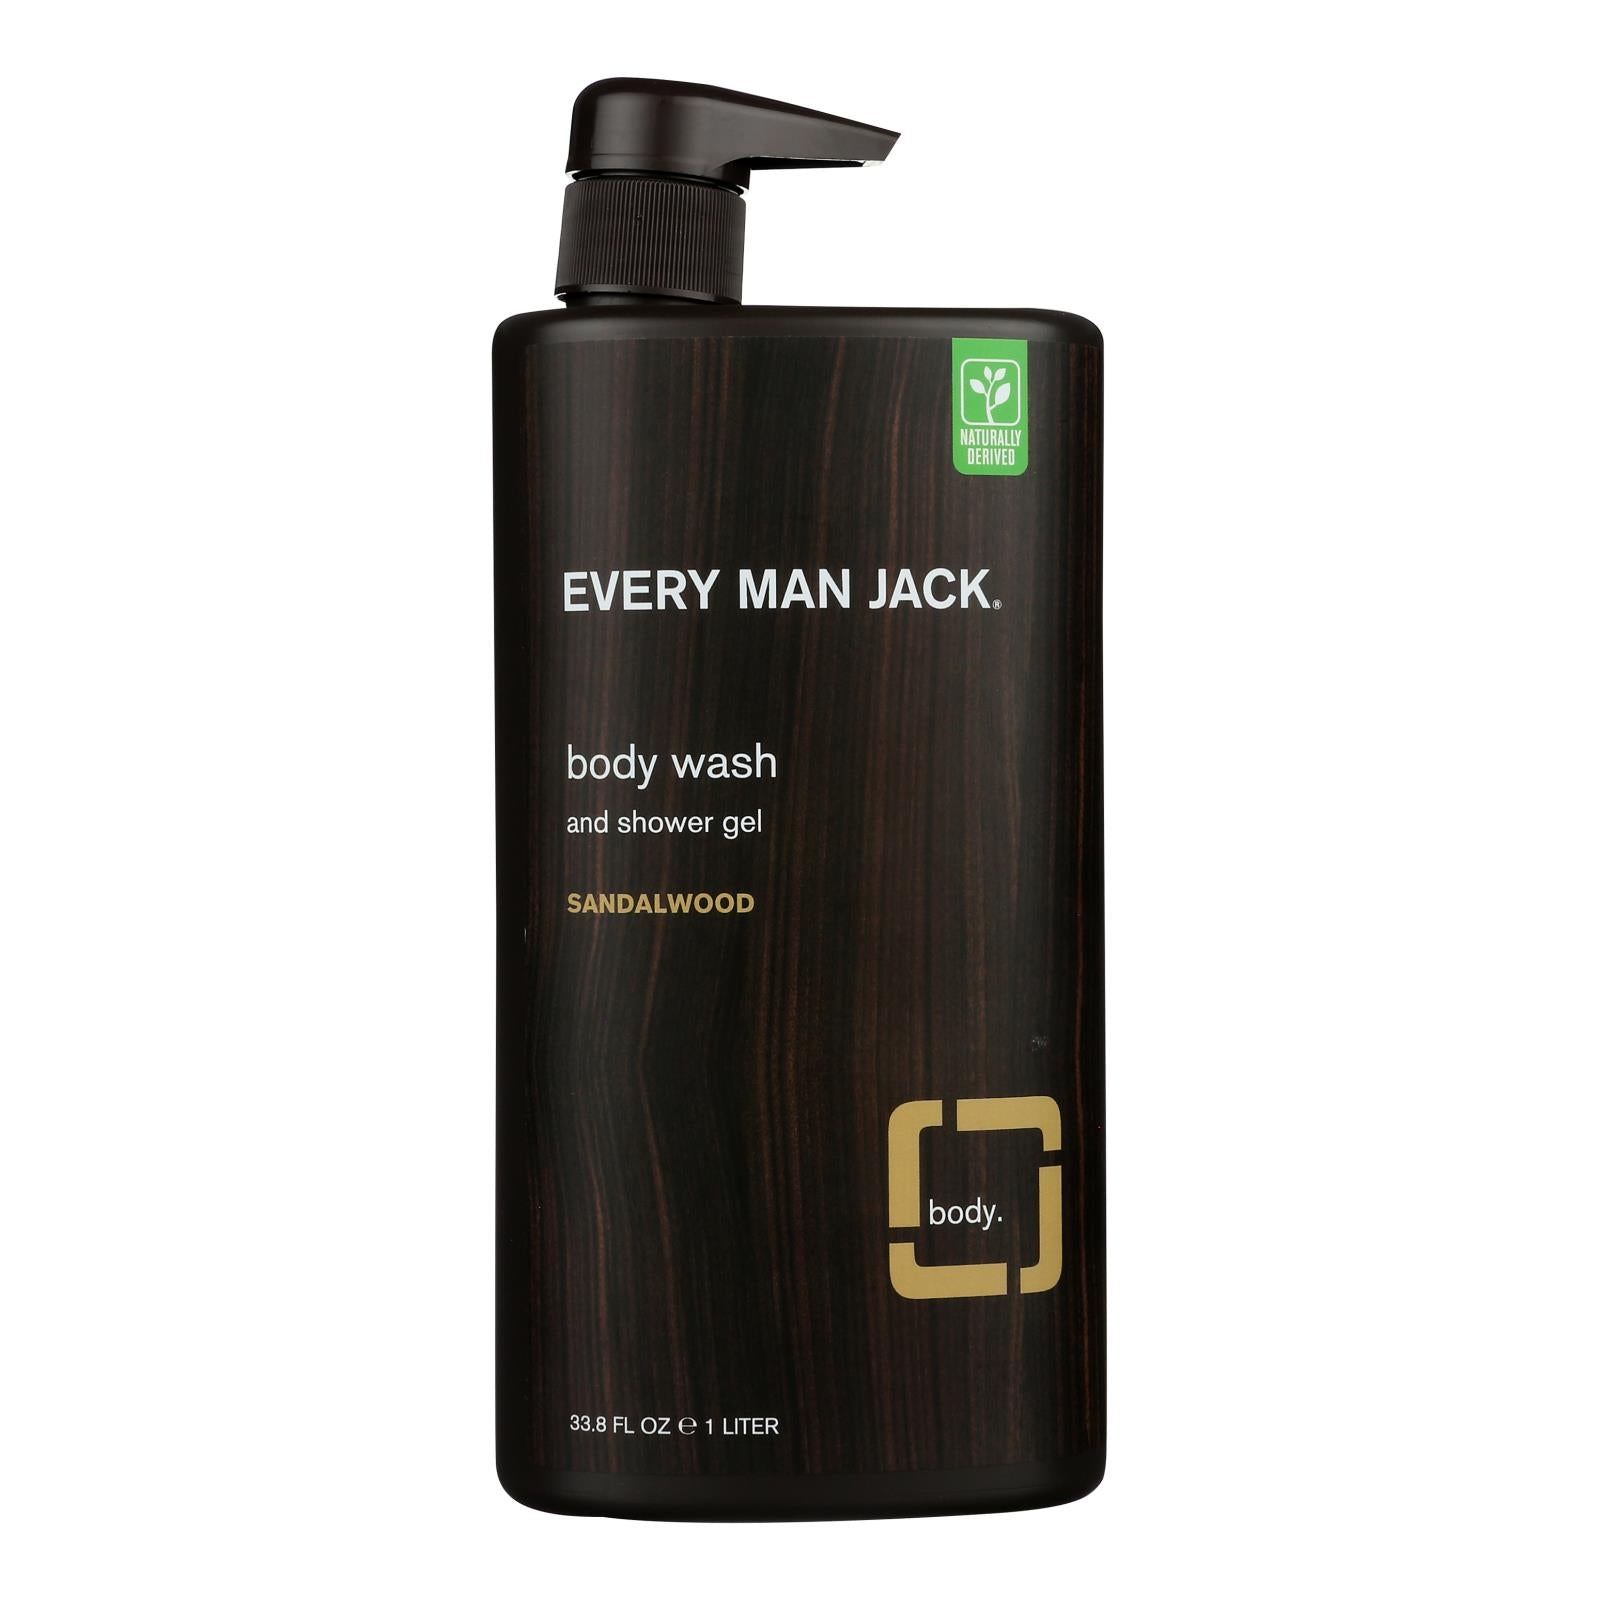 Every Man Jack Body Wash Sandalwood Body Wash - 1 Each - 33.8 fl oz.